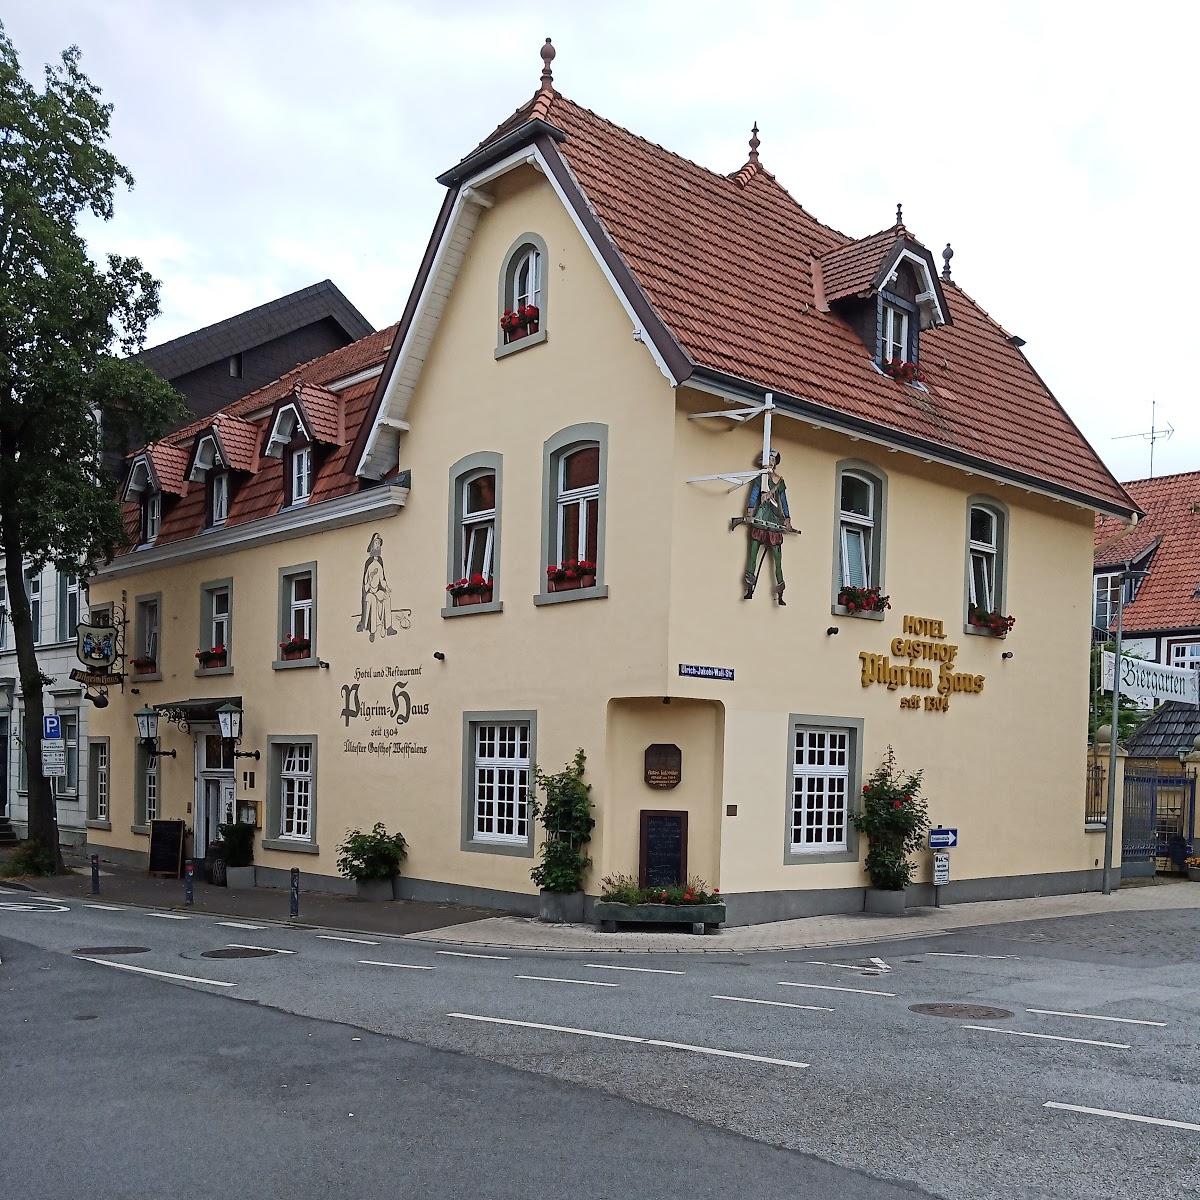 Restaurant "Vulkan Grill" in Soest